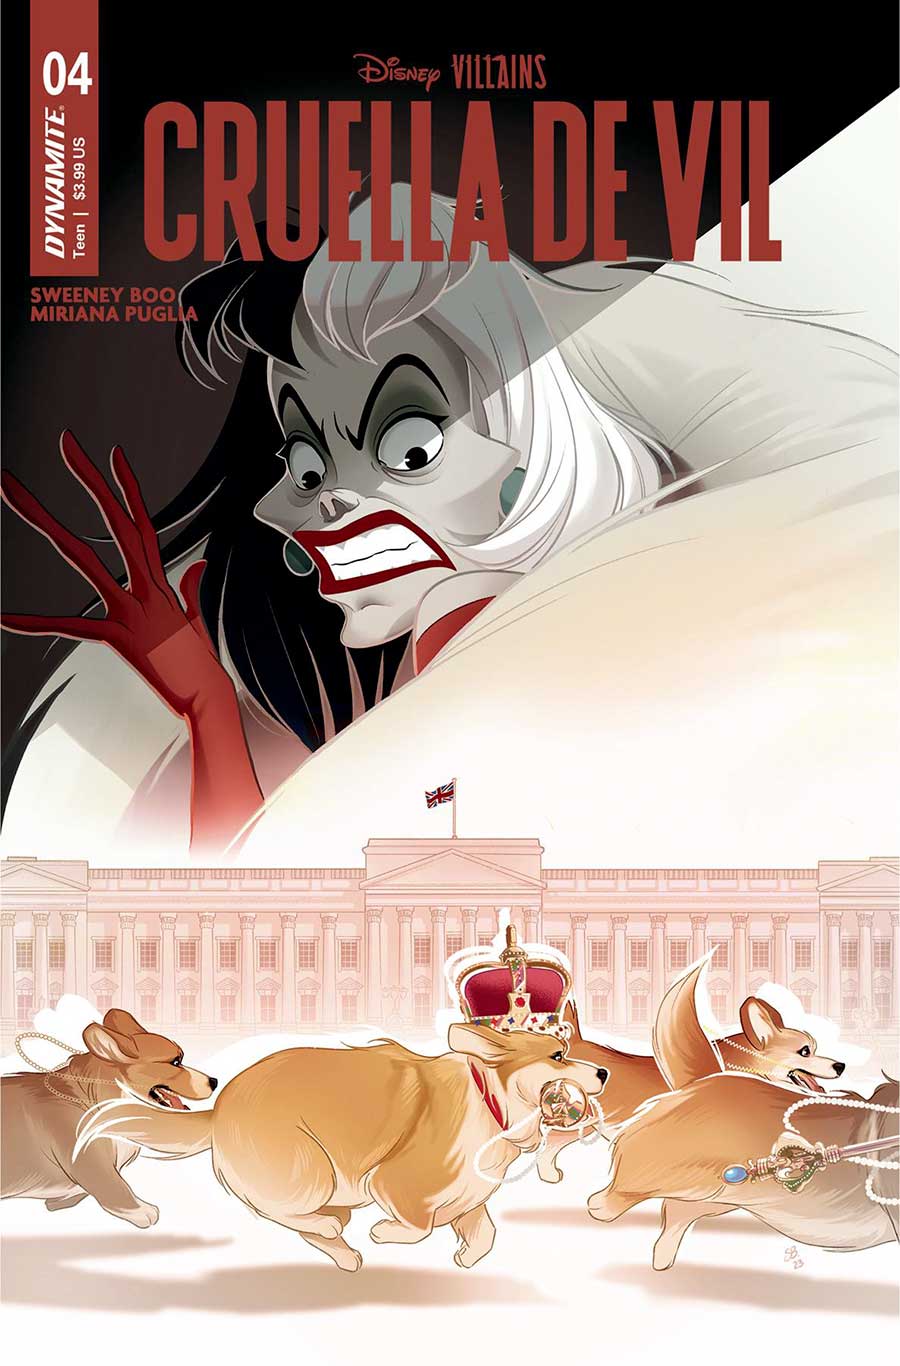 Disney Villains Cruella De Vil #4 Cover A Regular Sweeney Boo Cover